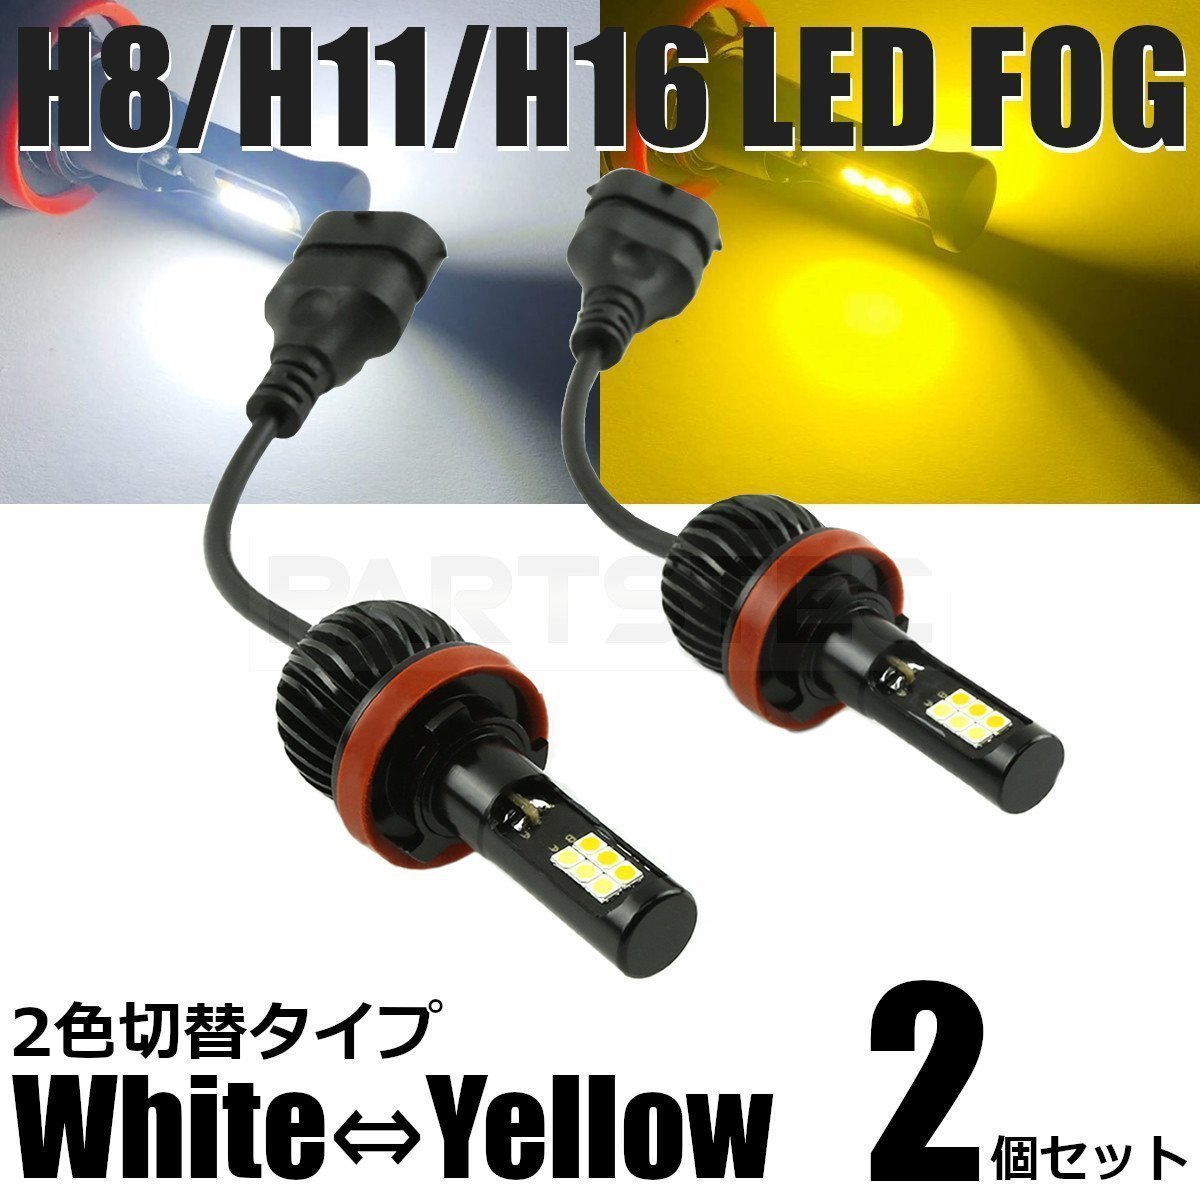 ロードスター LED フォグ H8/H11/H16 バルブ 2個 2色切替 白/黄色 40W級 5200lm デュアルカラー /134-53 A-1_画像1